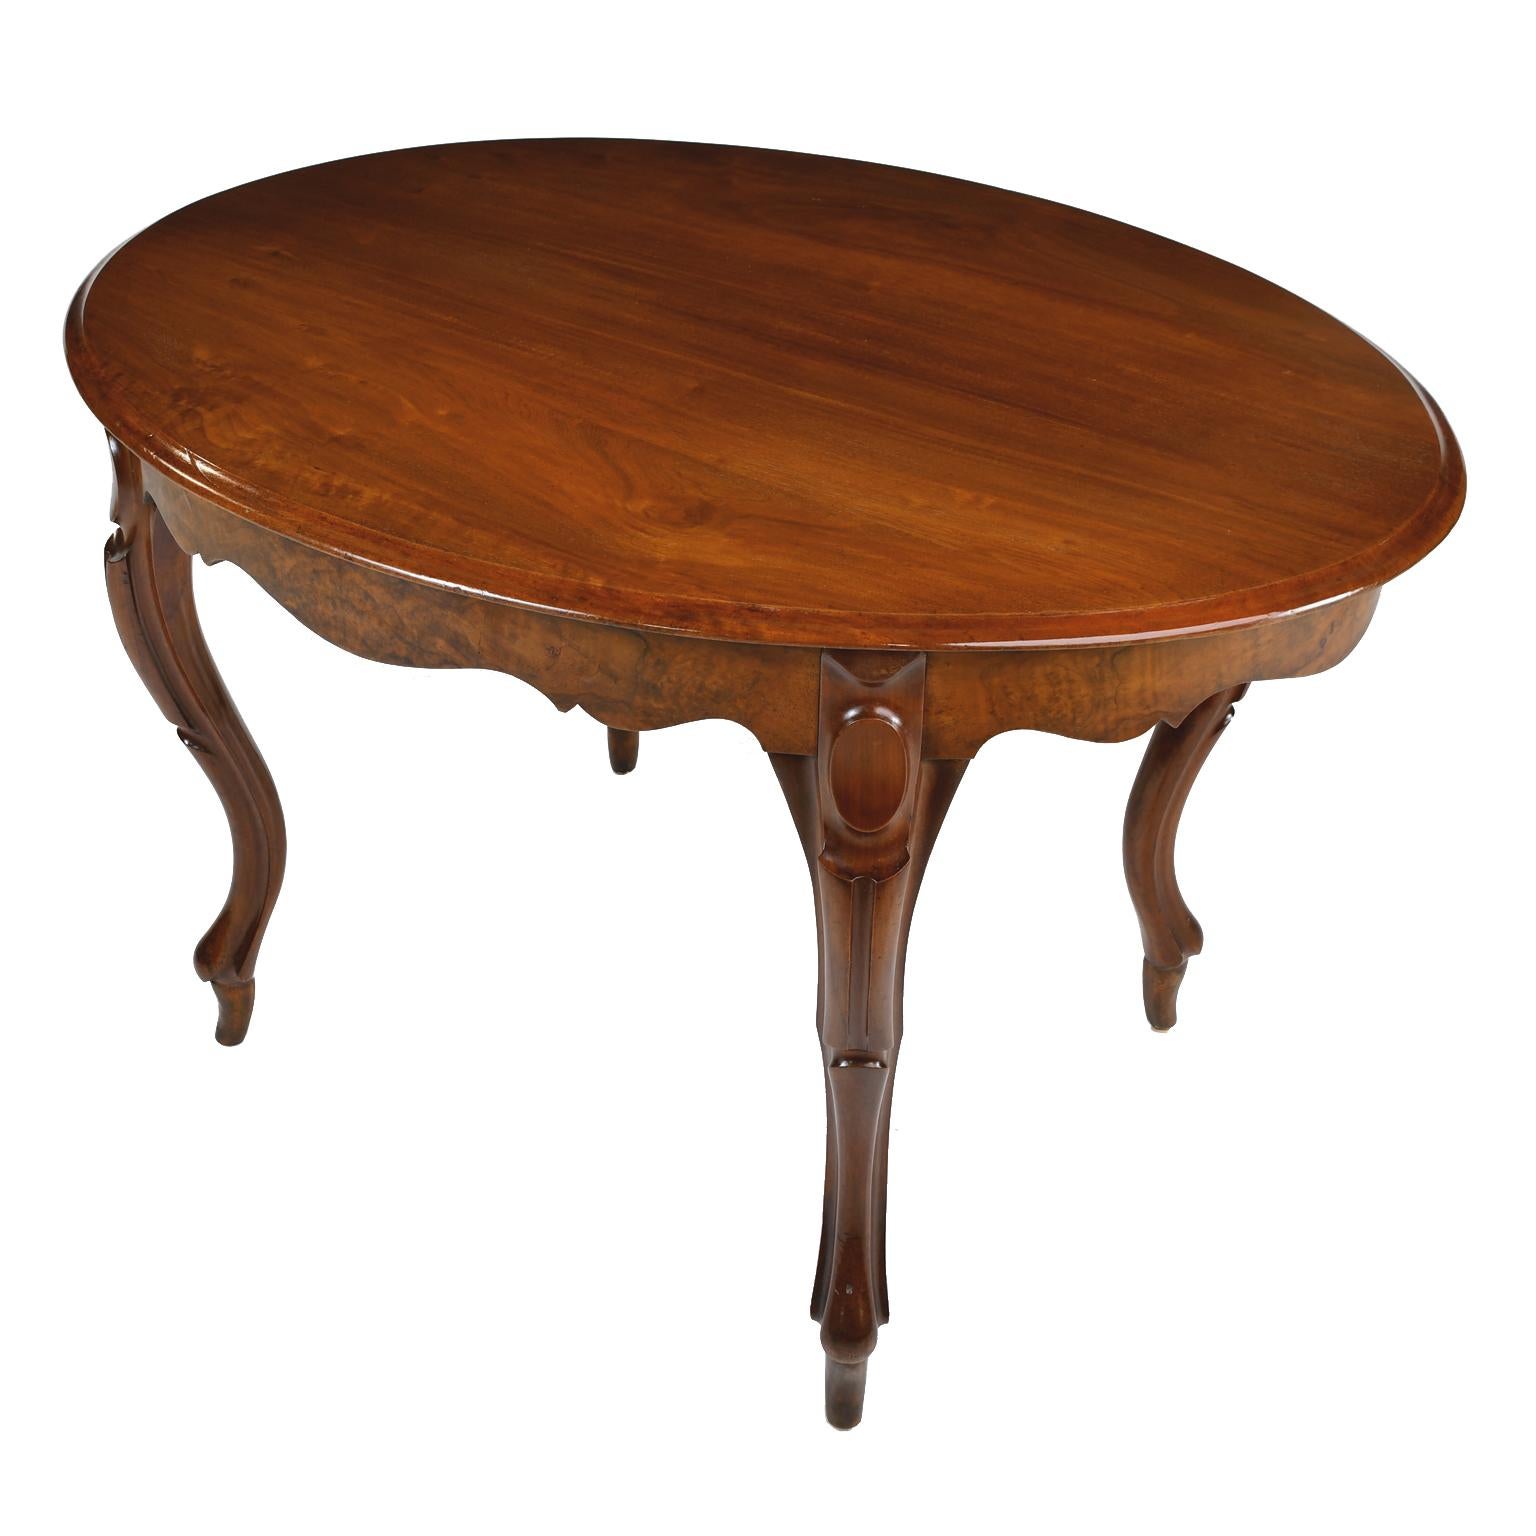 Ein feiner Louis-Philippe-Salontisch mit ovaler Platte und geschwungener Schürze, die auf vier anmutig geschnitzten Cabriole-Beinen ruht. Platte und Beine sind aus massivem Mahagoni, die Schürze ist aus Wurzelholz gefertigt. Frankreich, um 1840. Ein